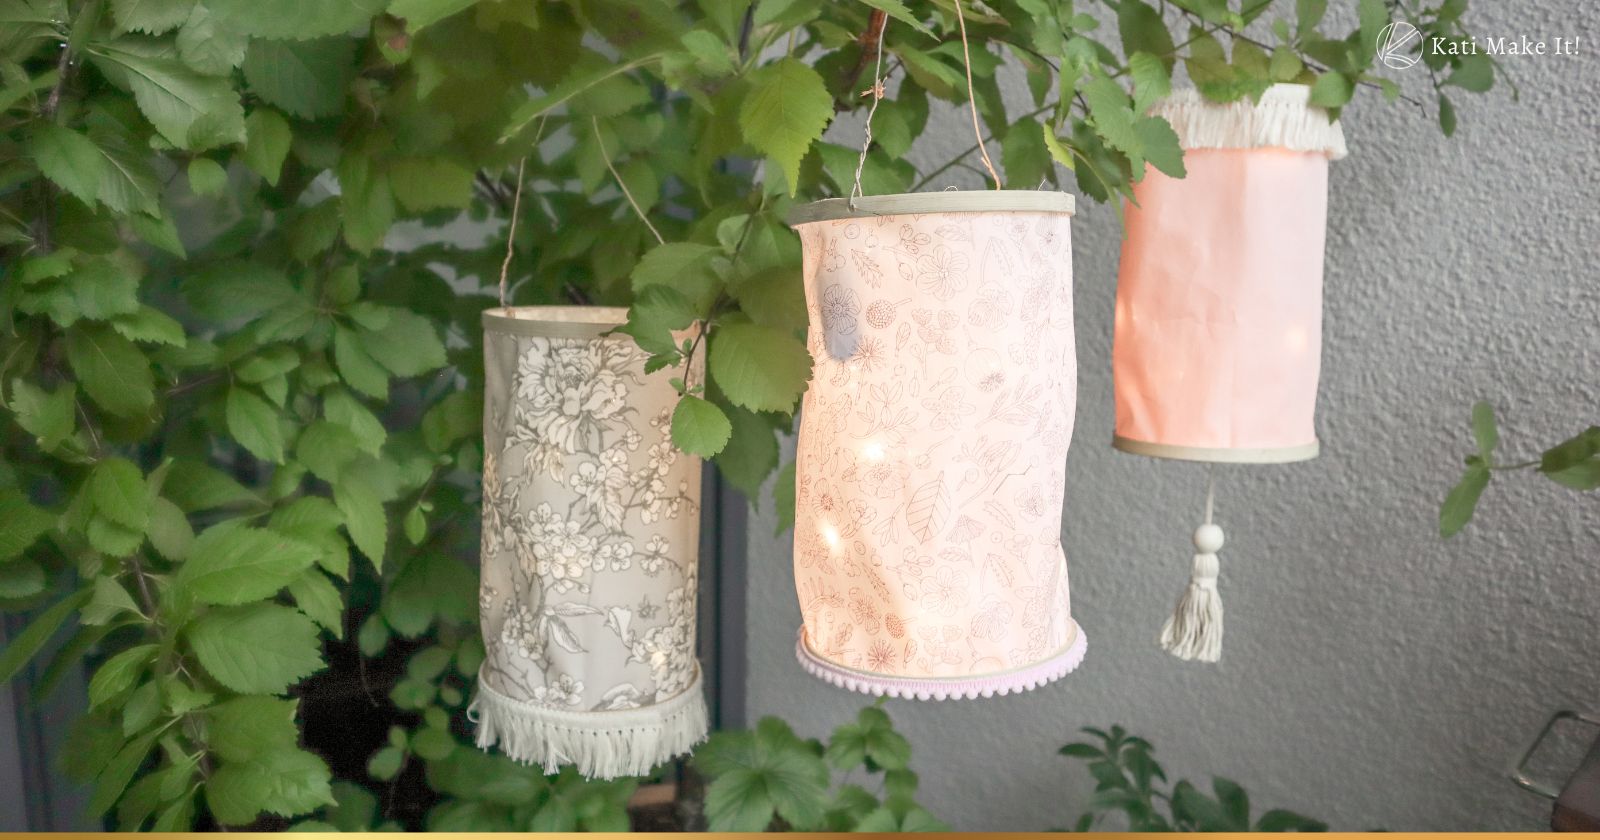 Sommer-Deko schöne Idee für draußen: Stofflampions (Laternen) für den Garten basteln. Ganz einfach Selbermachen ohne Nähen. Anleitung hier 👇🏻